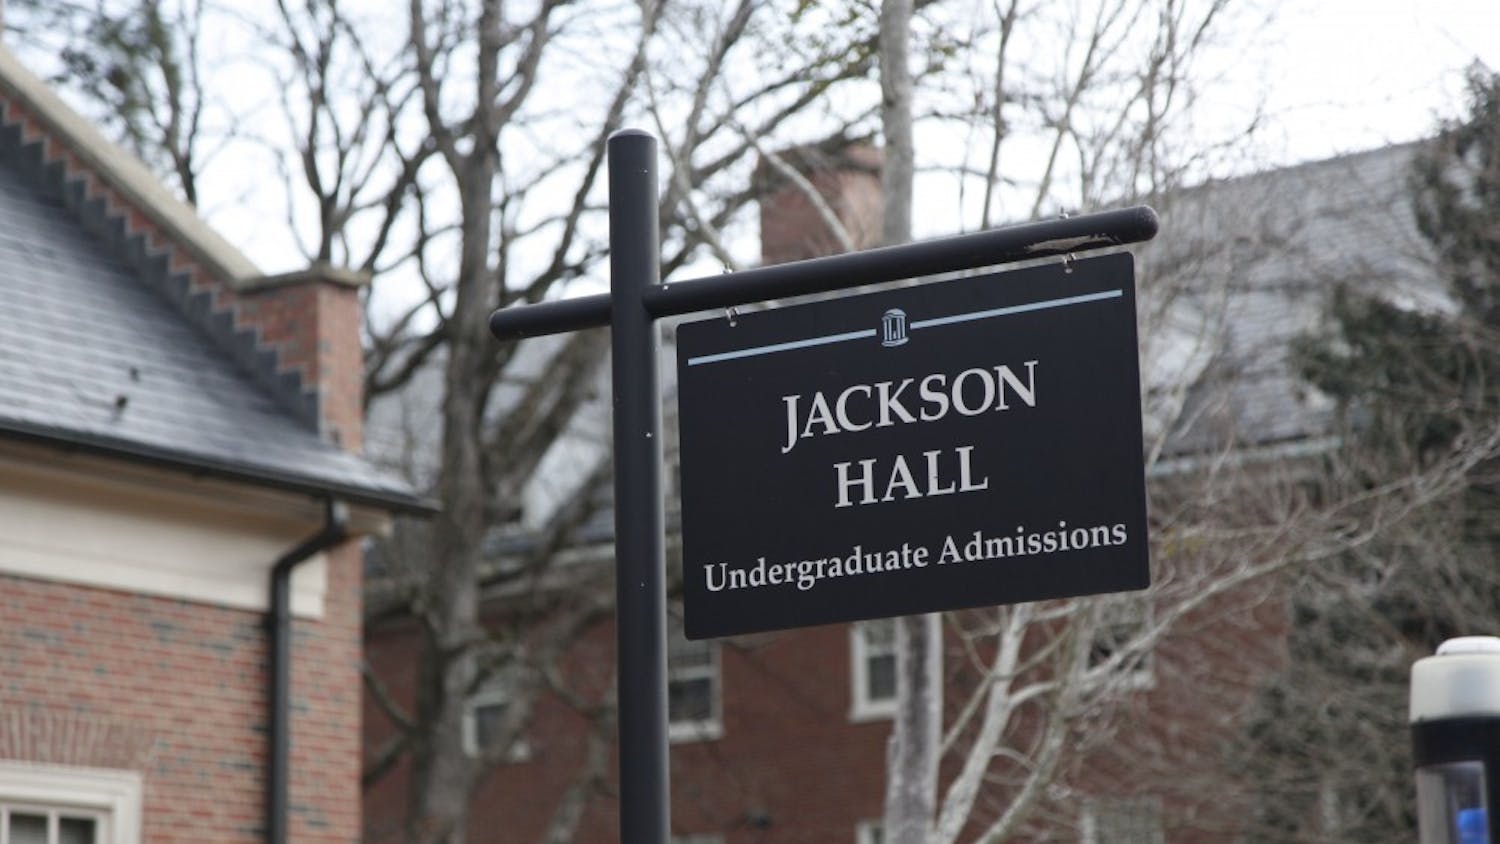 Jackson Hall Undergraduate Admissions